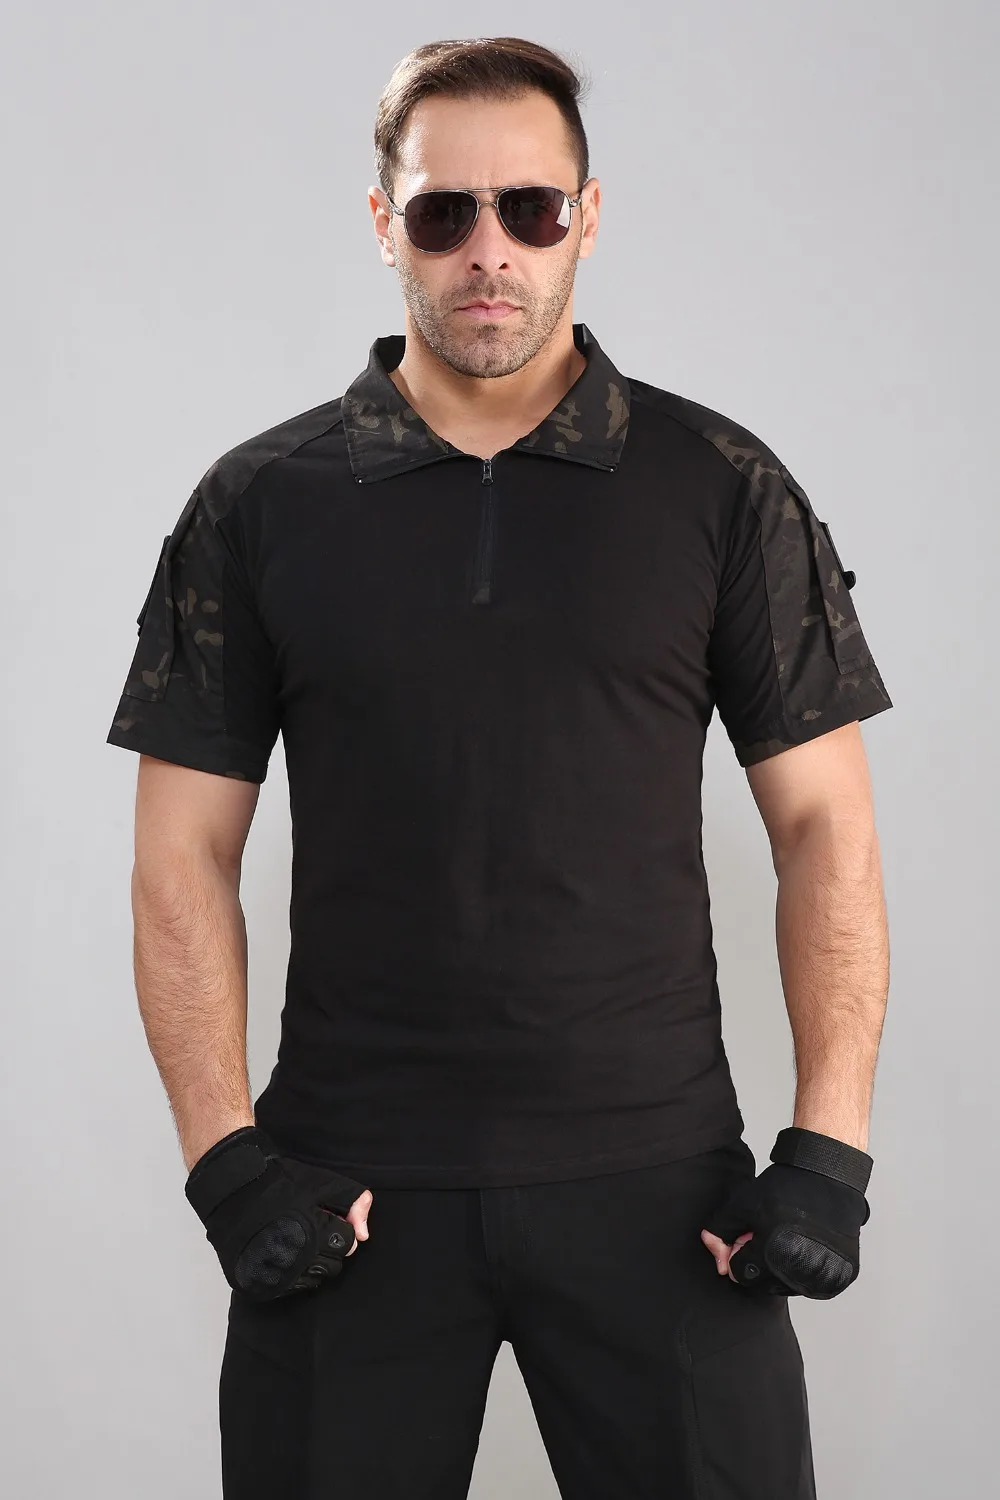 Летняя камуфляжная армейская боевая рубашка для мужчин, Военная тактическая рубашка поло США, страйкбольная камуфляжная рубашка поло с коротким рукавом